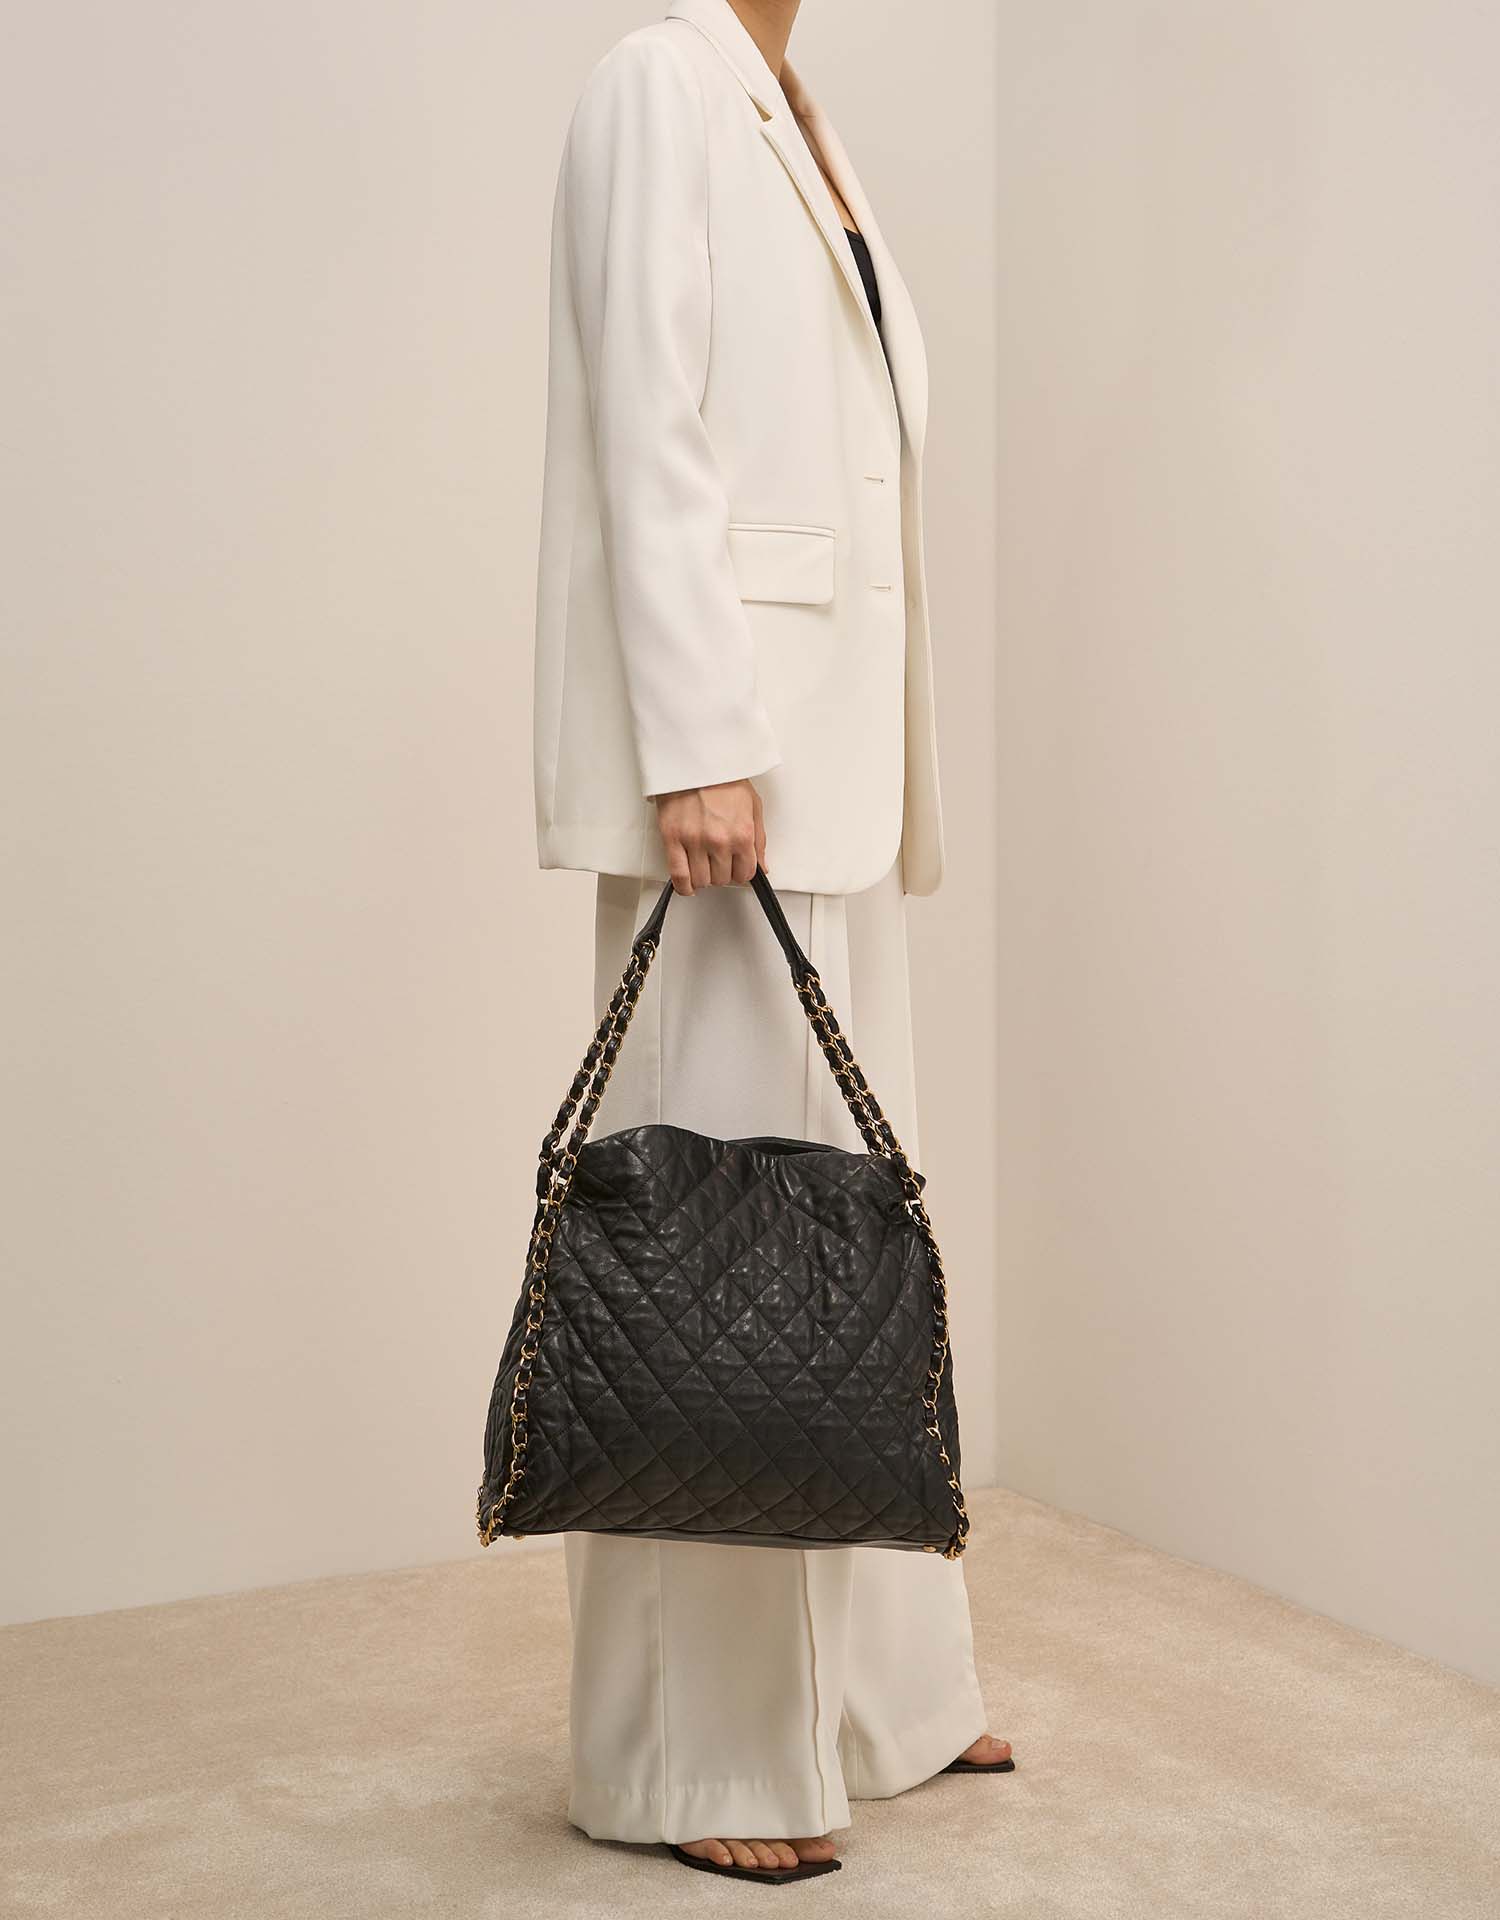 Chanel Shopper Large Black on Model | Sell your designer bag on Saclab.com